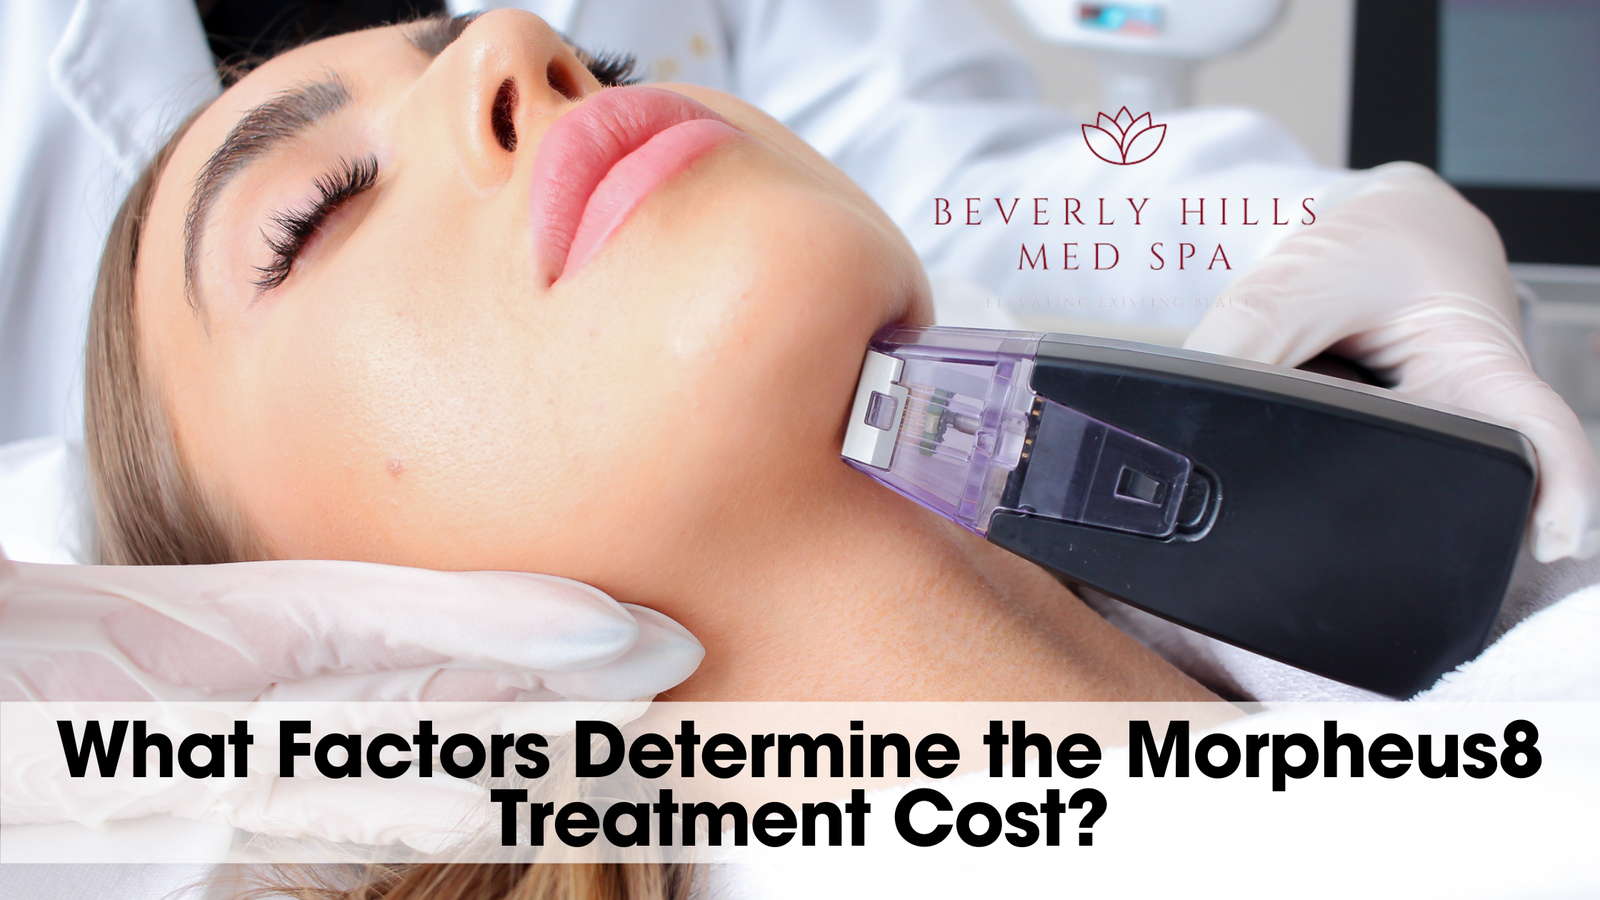 What Factors Determine the Morpheus8 Treatment Cost?